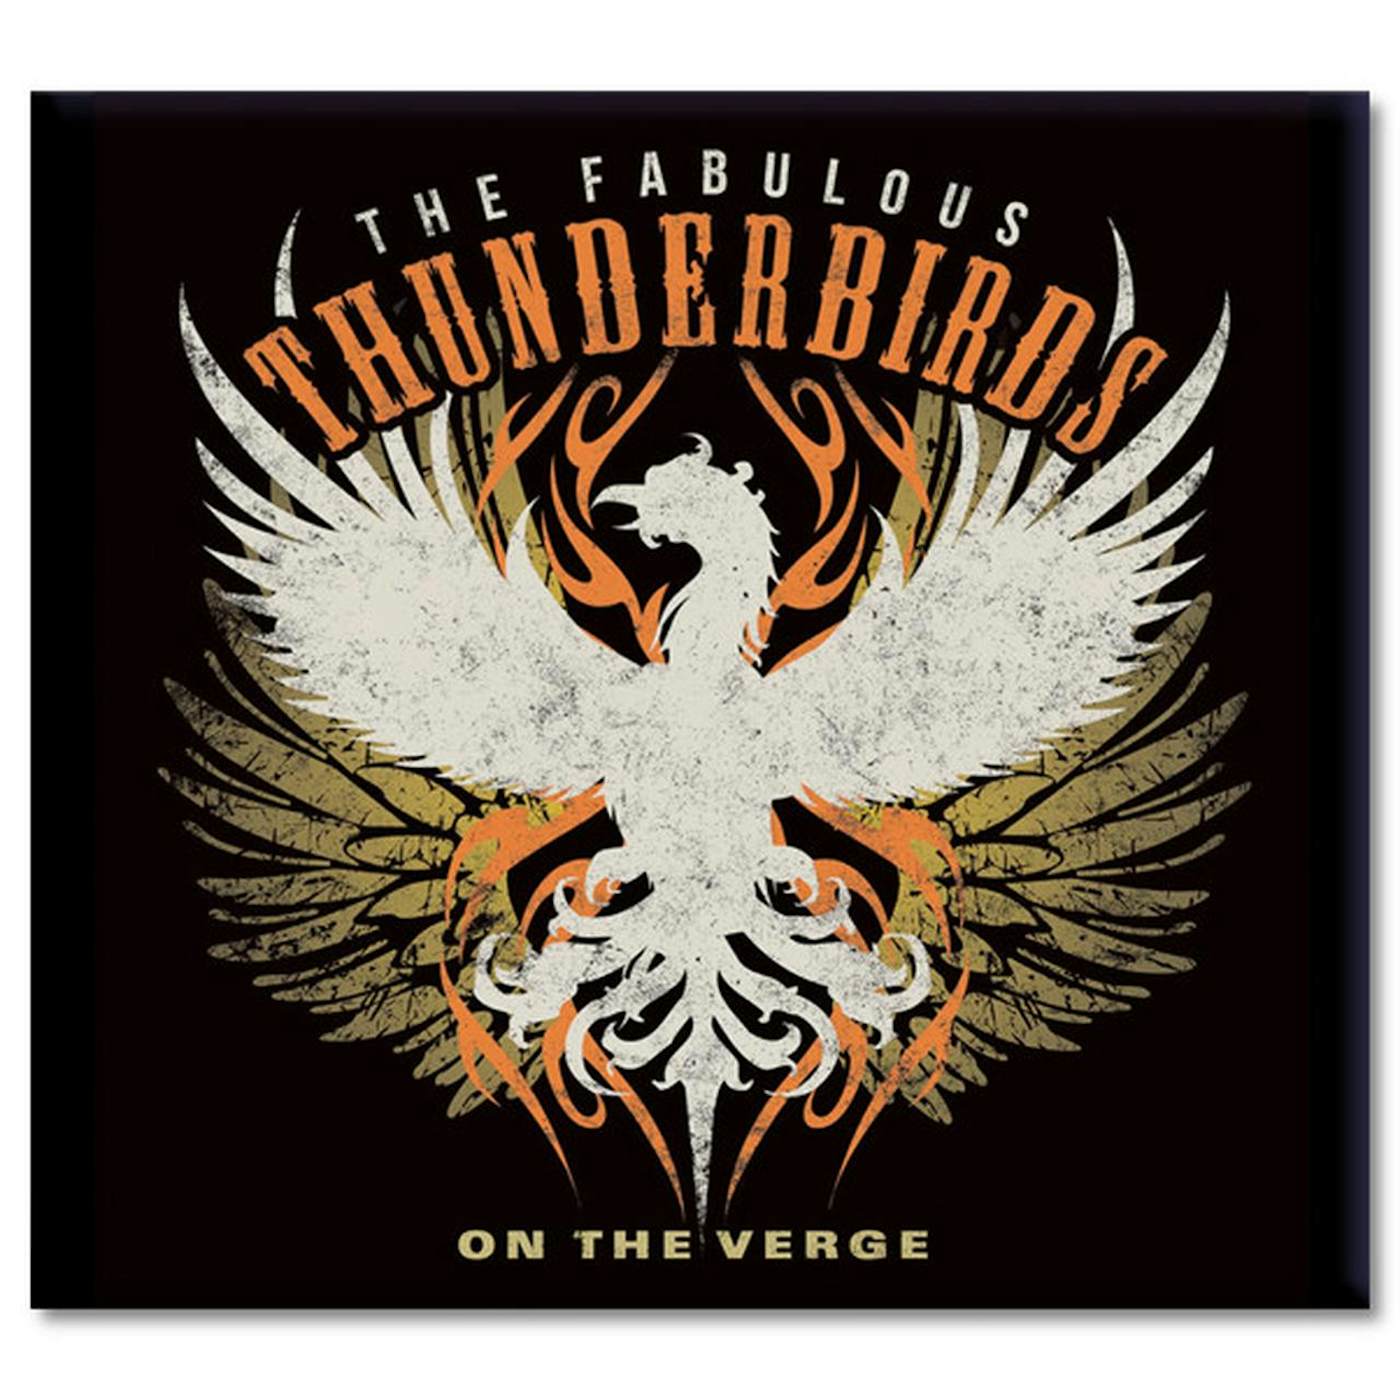 The Fabulous Thunderbirds "On the Verge" CD